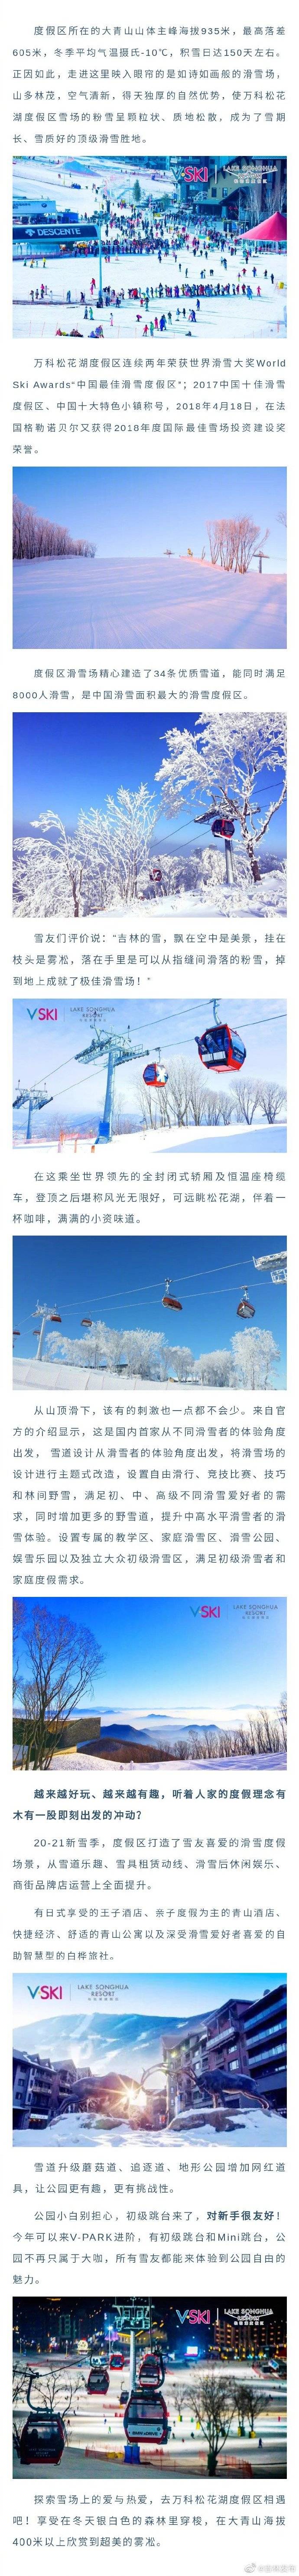 吉林发布”粉丝节 滑雪上瘾? 万科松花湖滑雪场吹响滑雪集结号